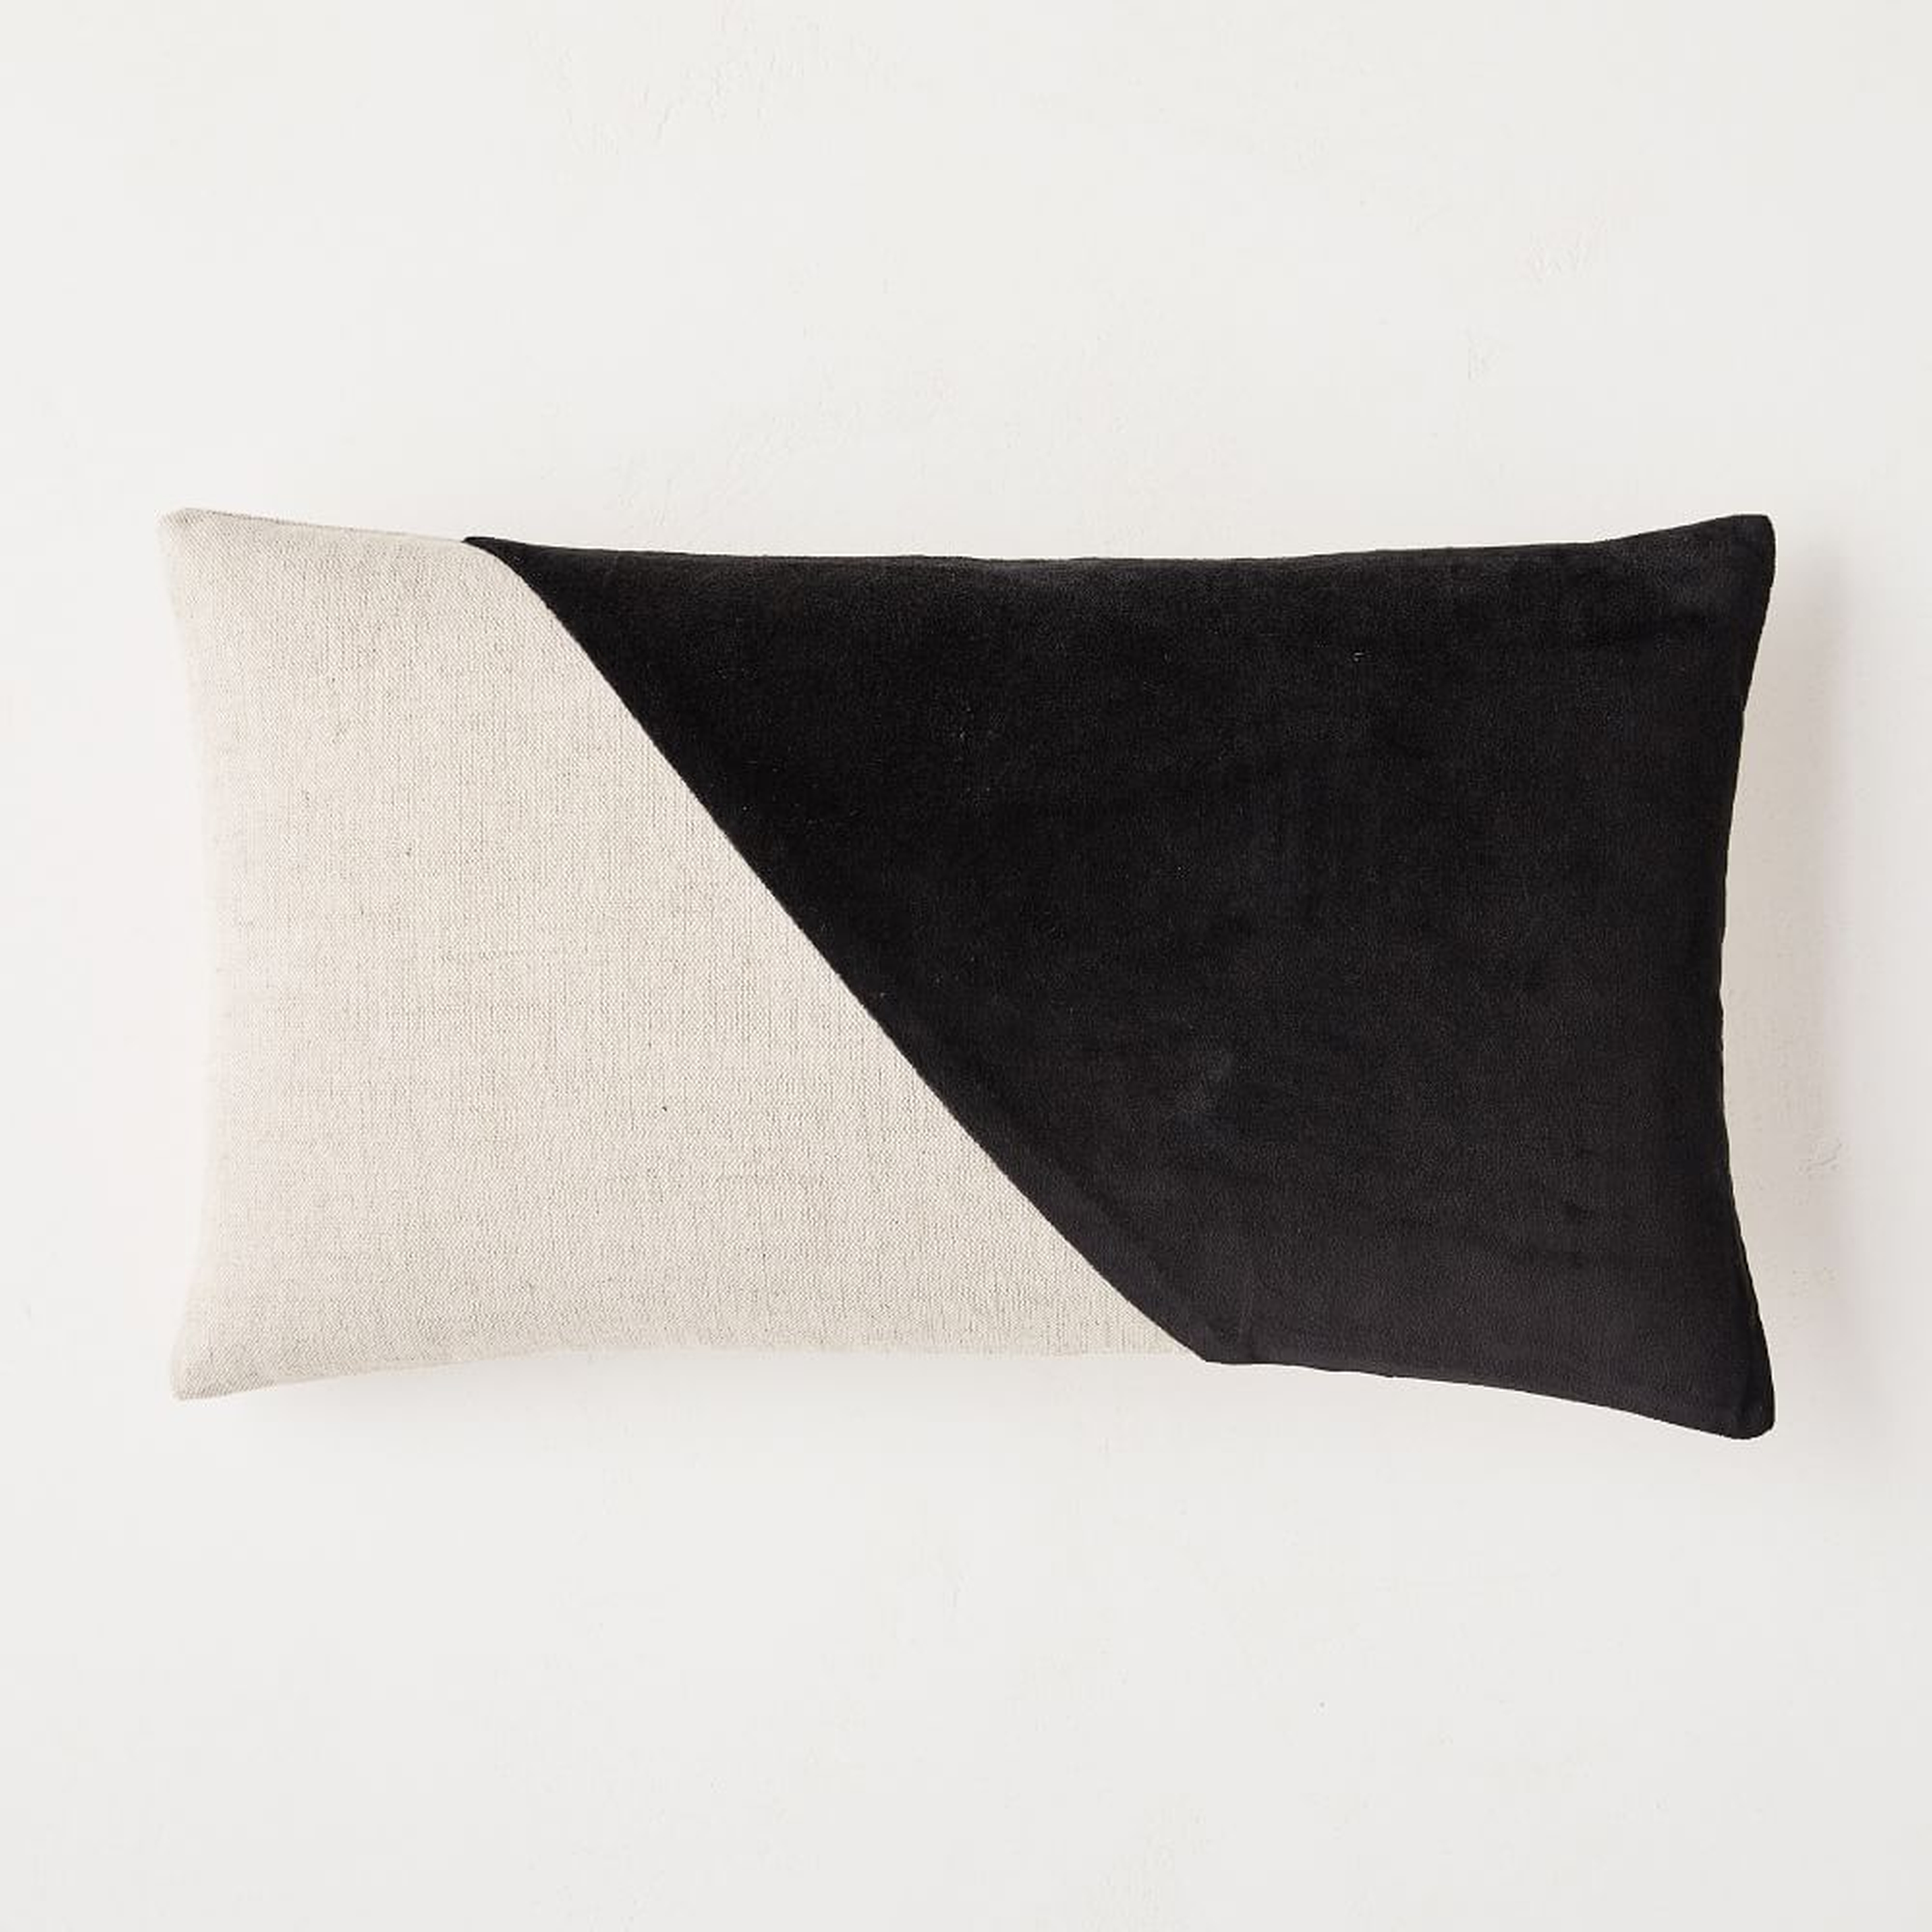 Cotton Linen + Velvet Corners Pillow Cover, 12"x21", Black, Set of 2 - West Elm